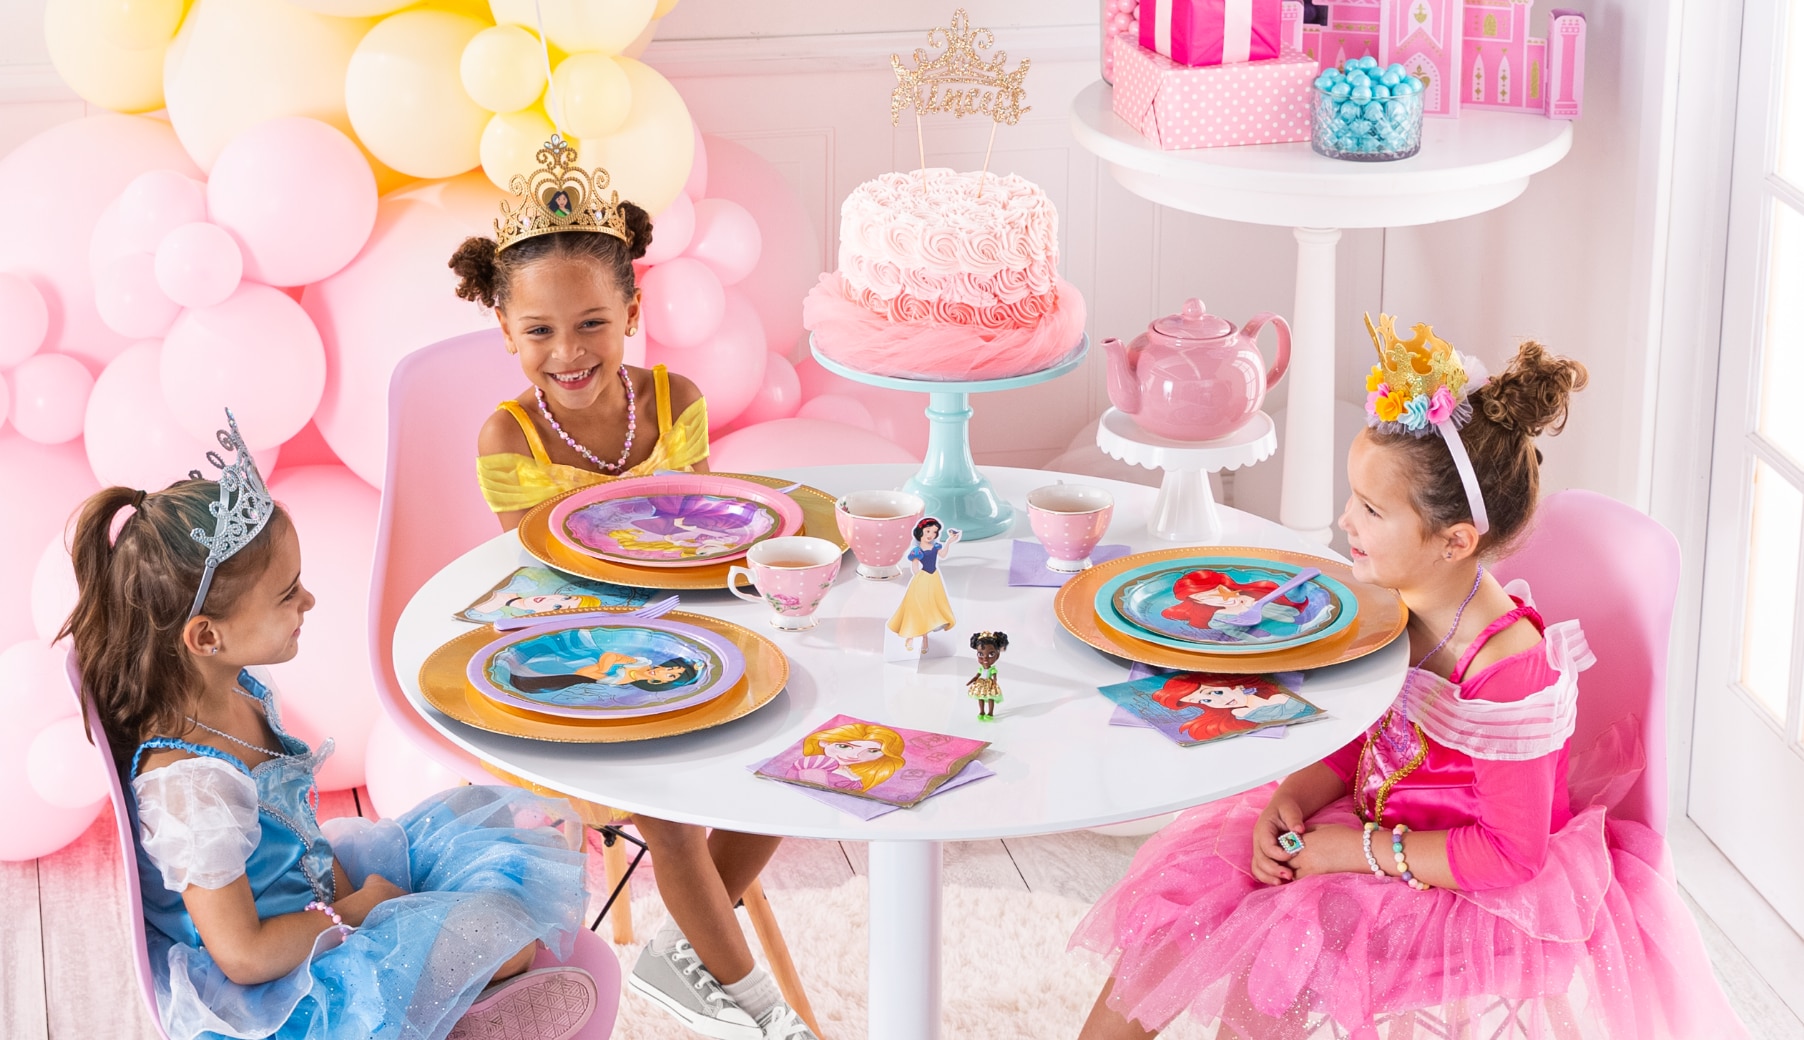 Trois jeunes filles déguisées en princesses assises à une table de desserts d’anniversaire avec des assiettes, des serviettes de table et des tasses à thé à thème de princesses.